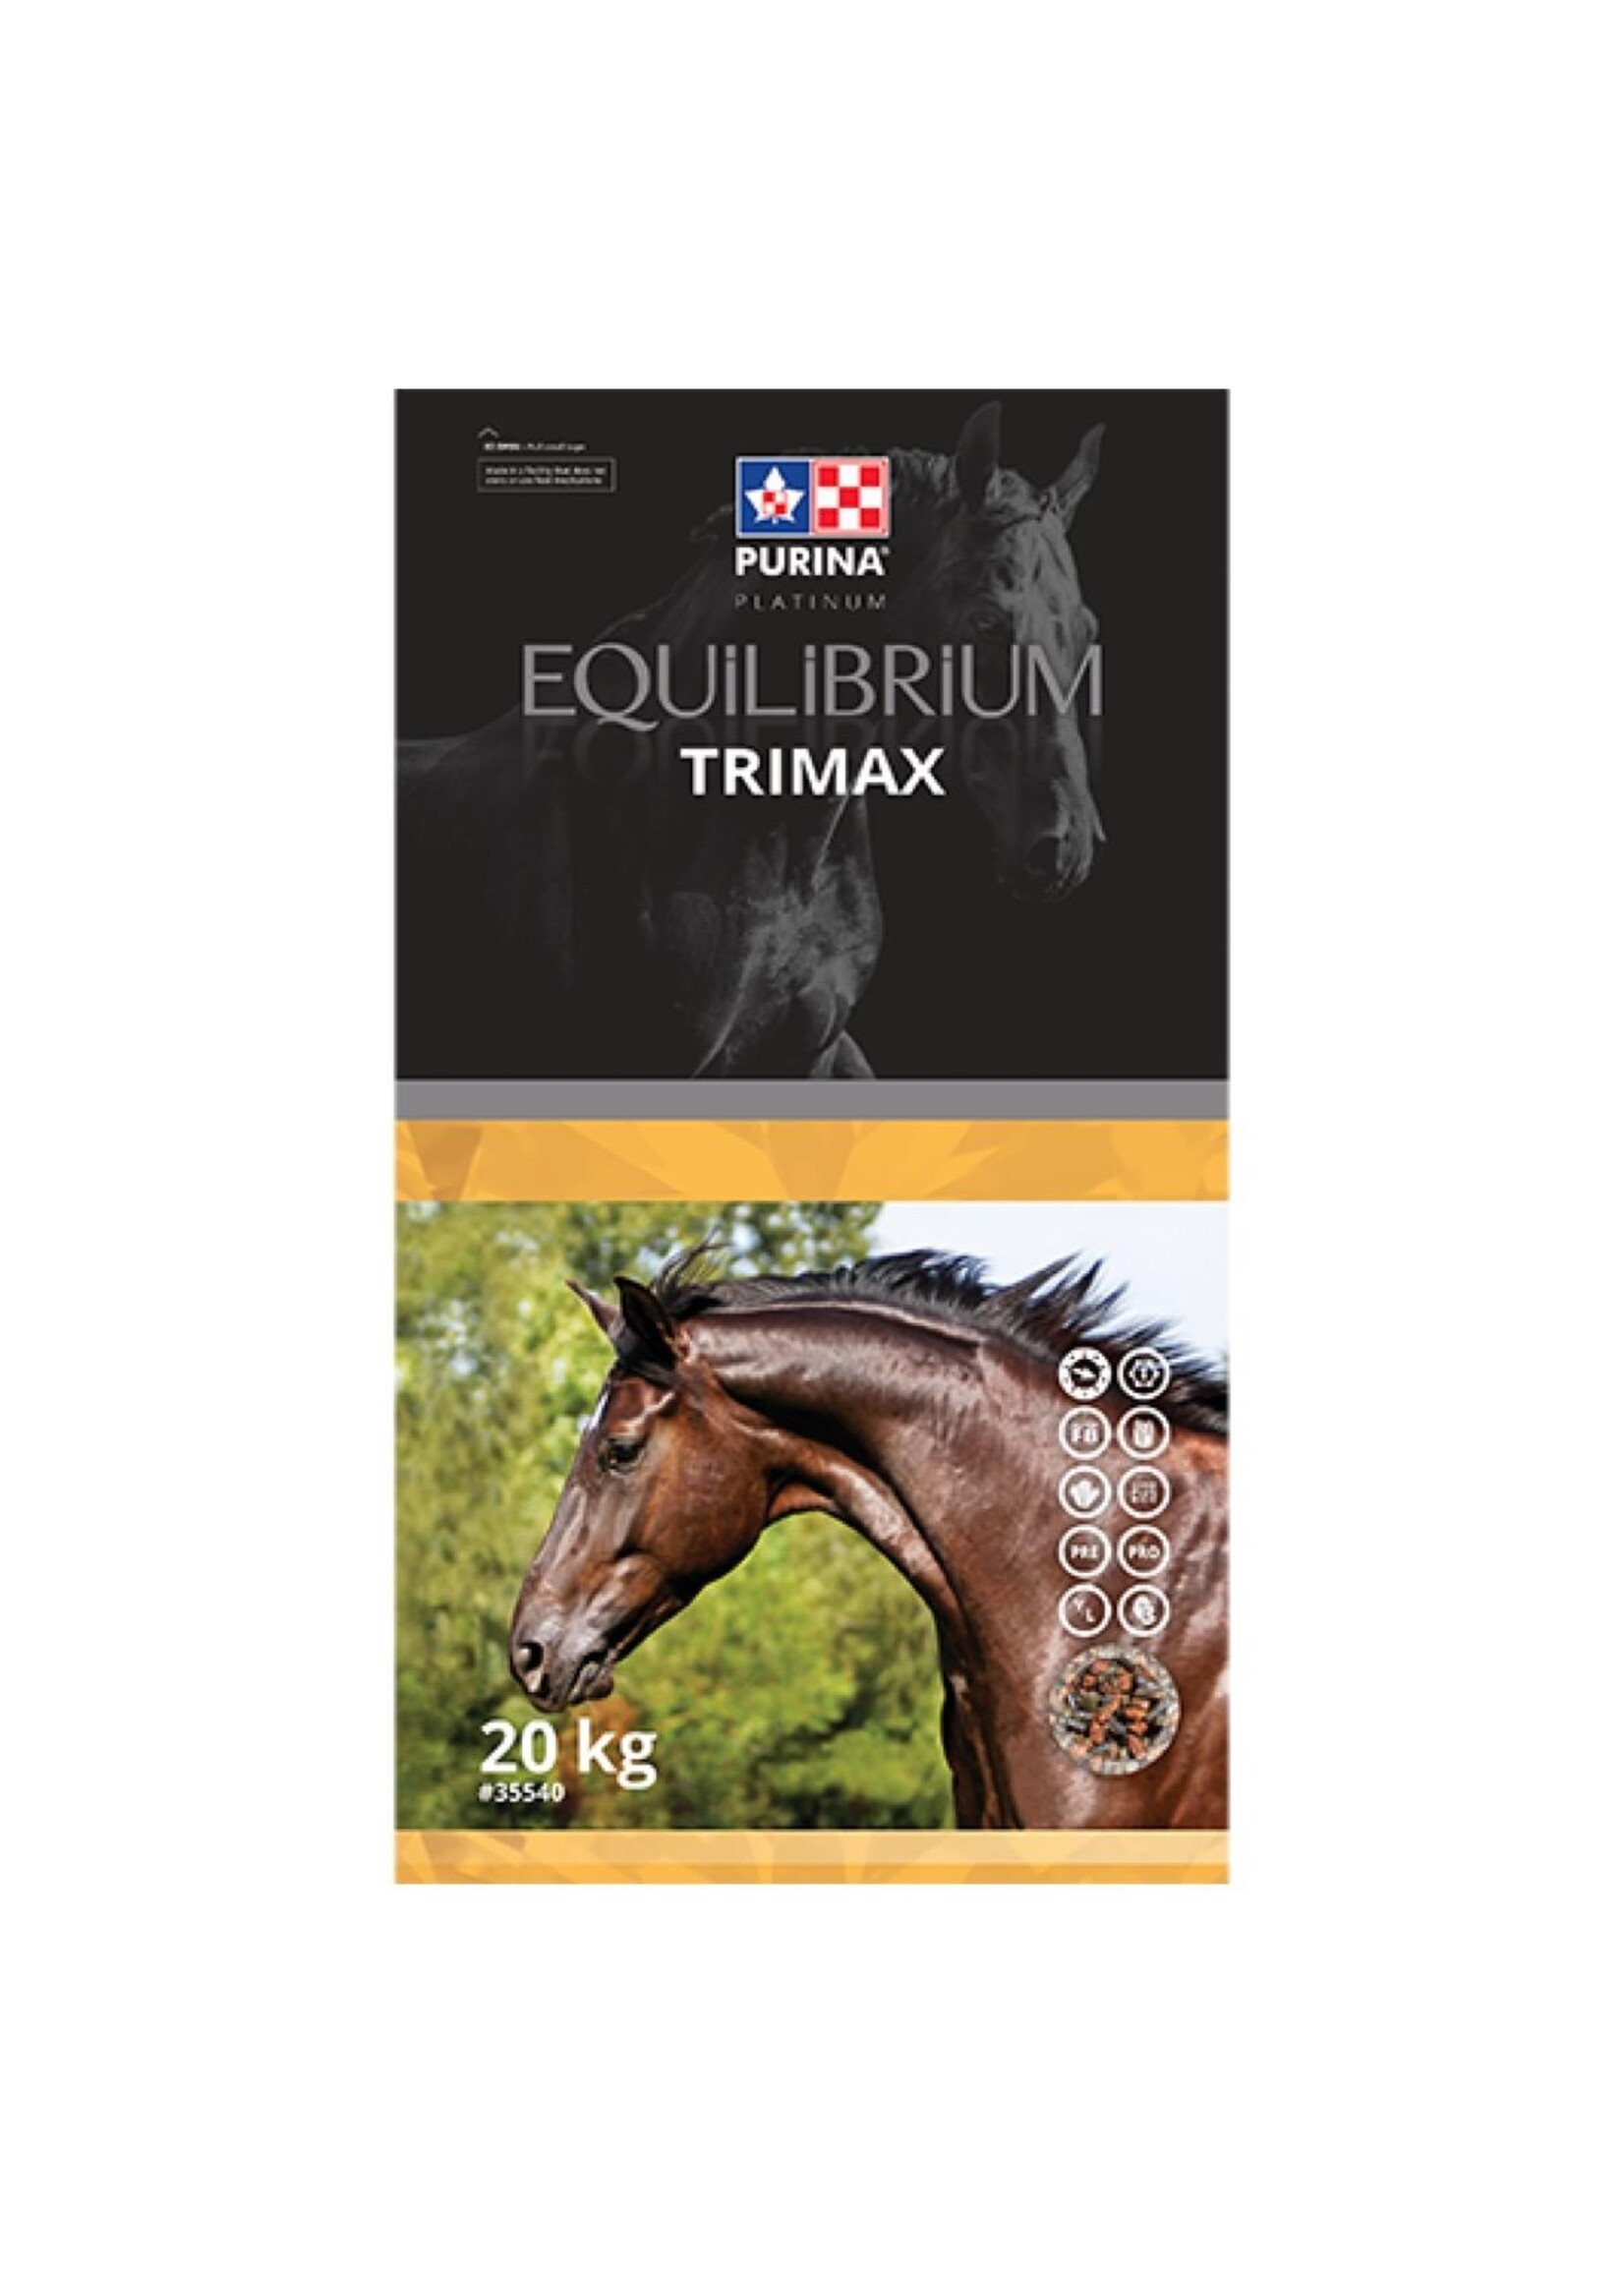 Purina Purina - Equilibrium - TriMax - 20 kg